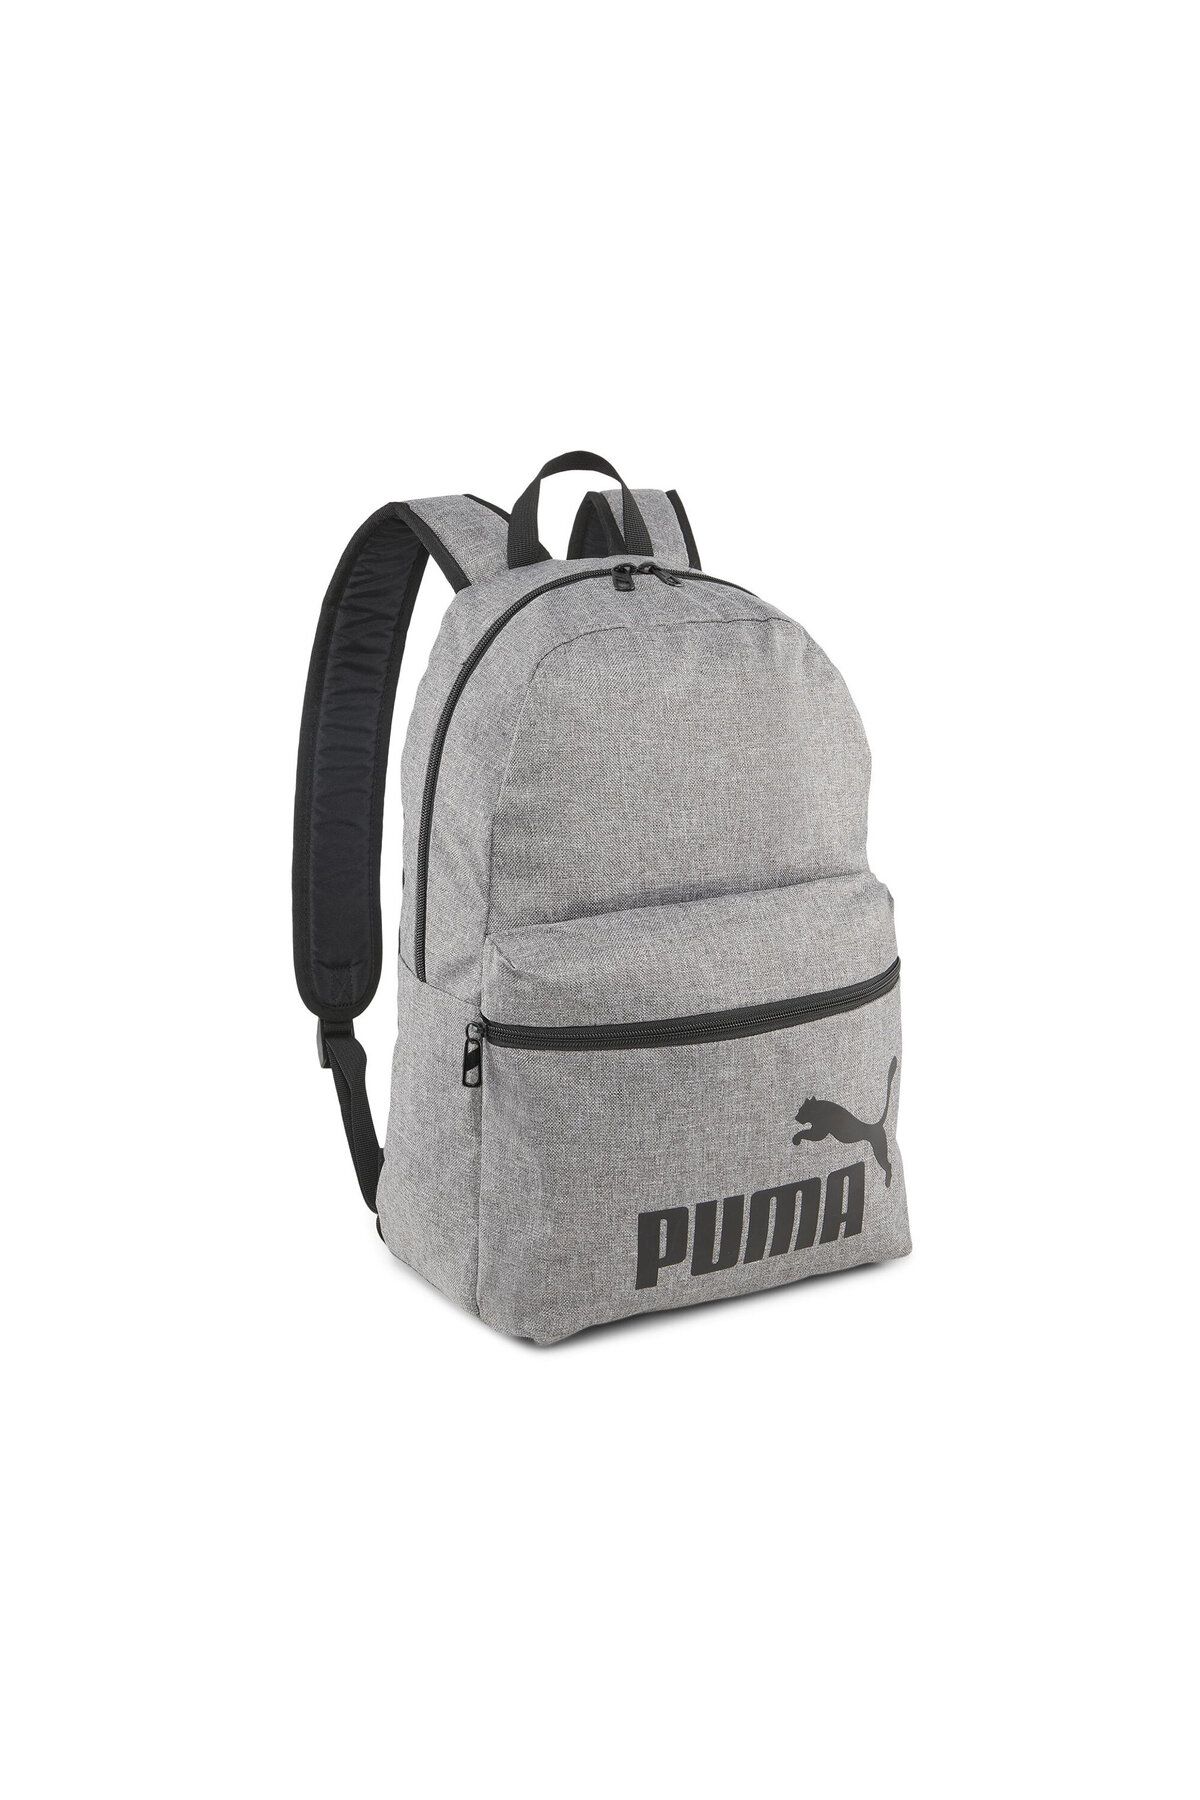 Puma Unisex Backpack Günlük Kullanıma Uygun Okul ve Sırt Çantası